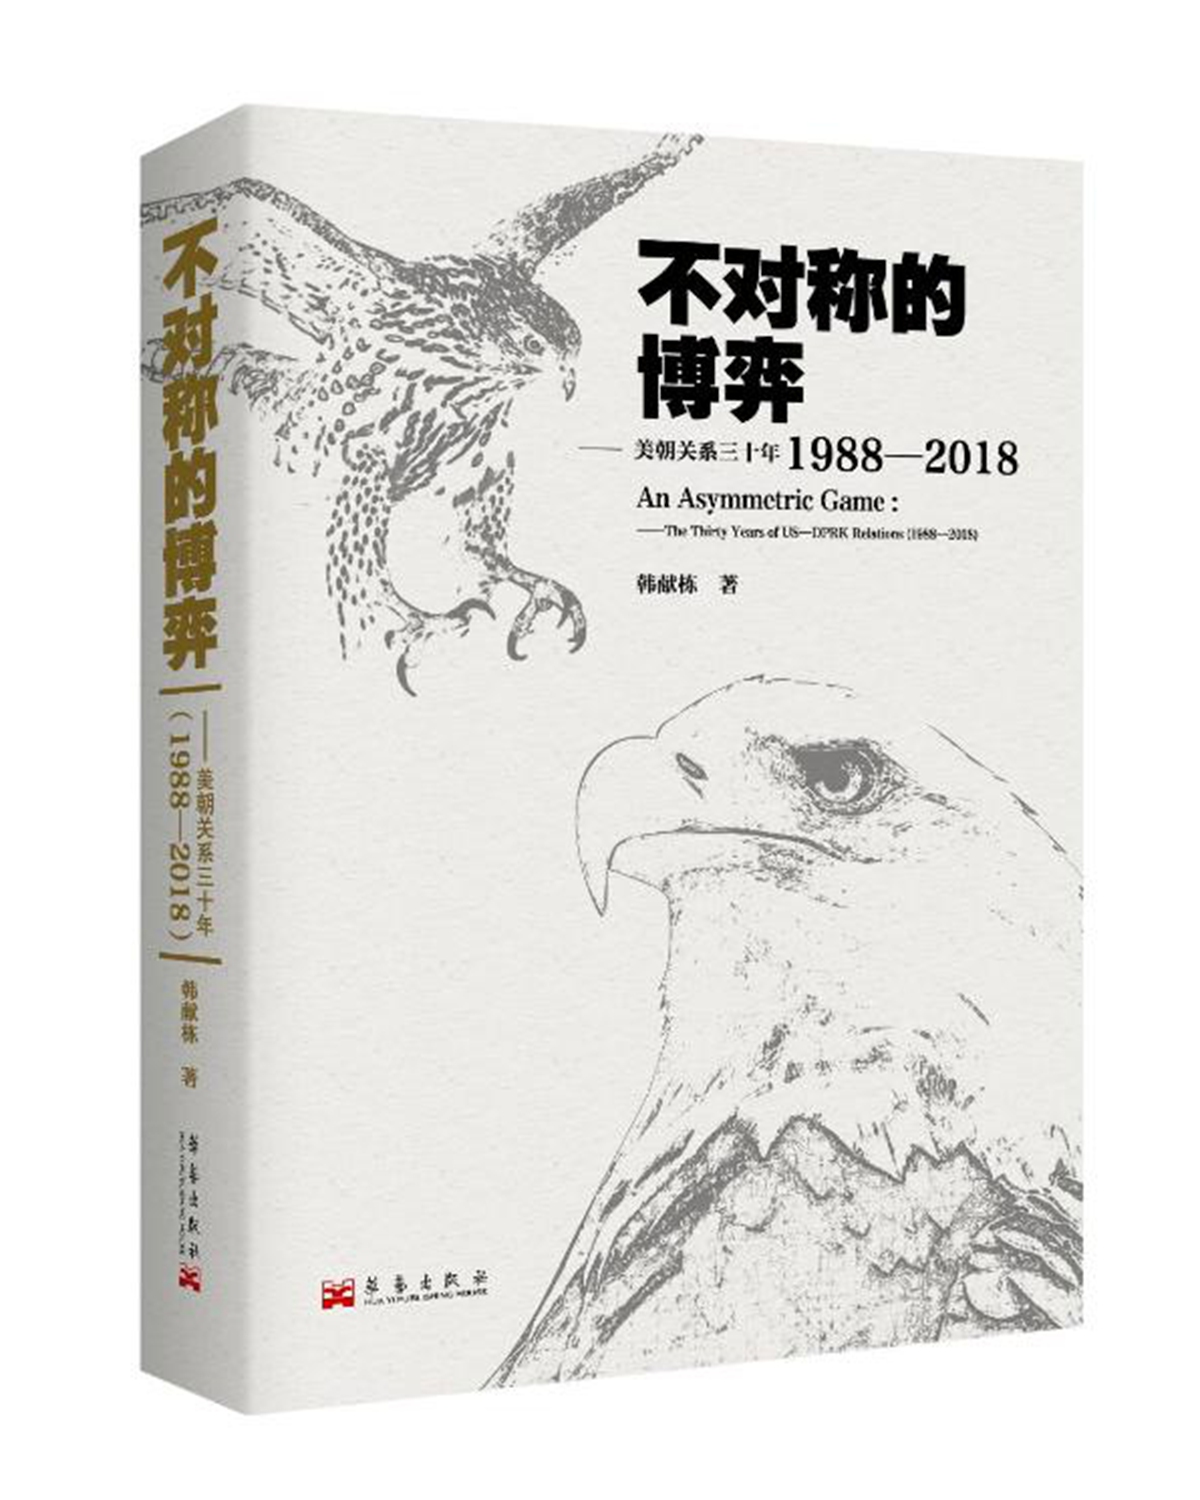 Book cover of An Asymmetric Game Photo: Courtesy of The Korean Peninsula Forum